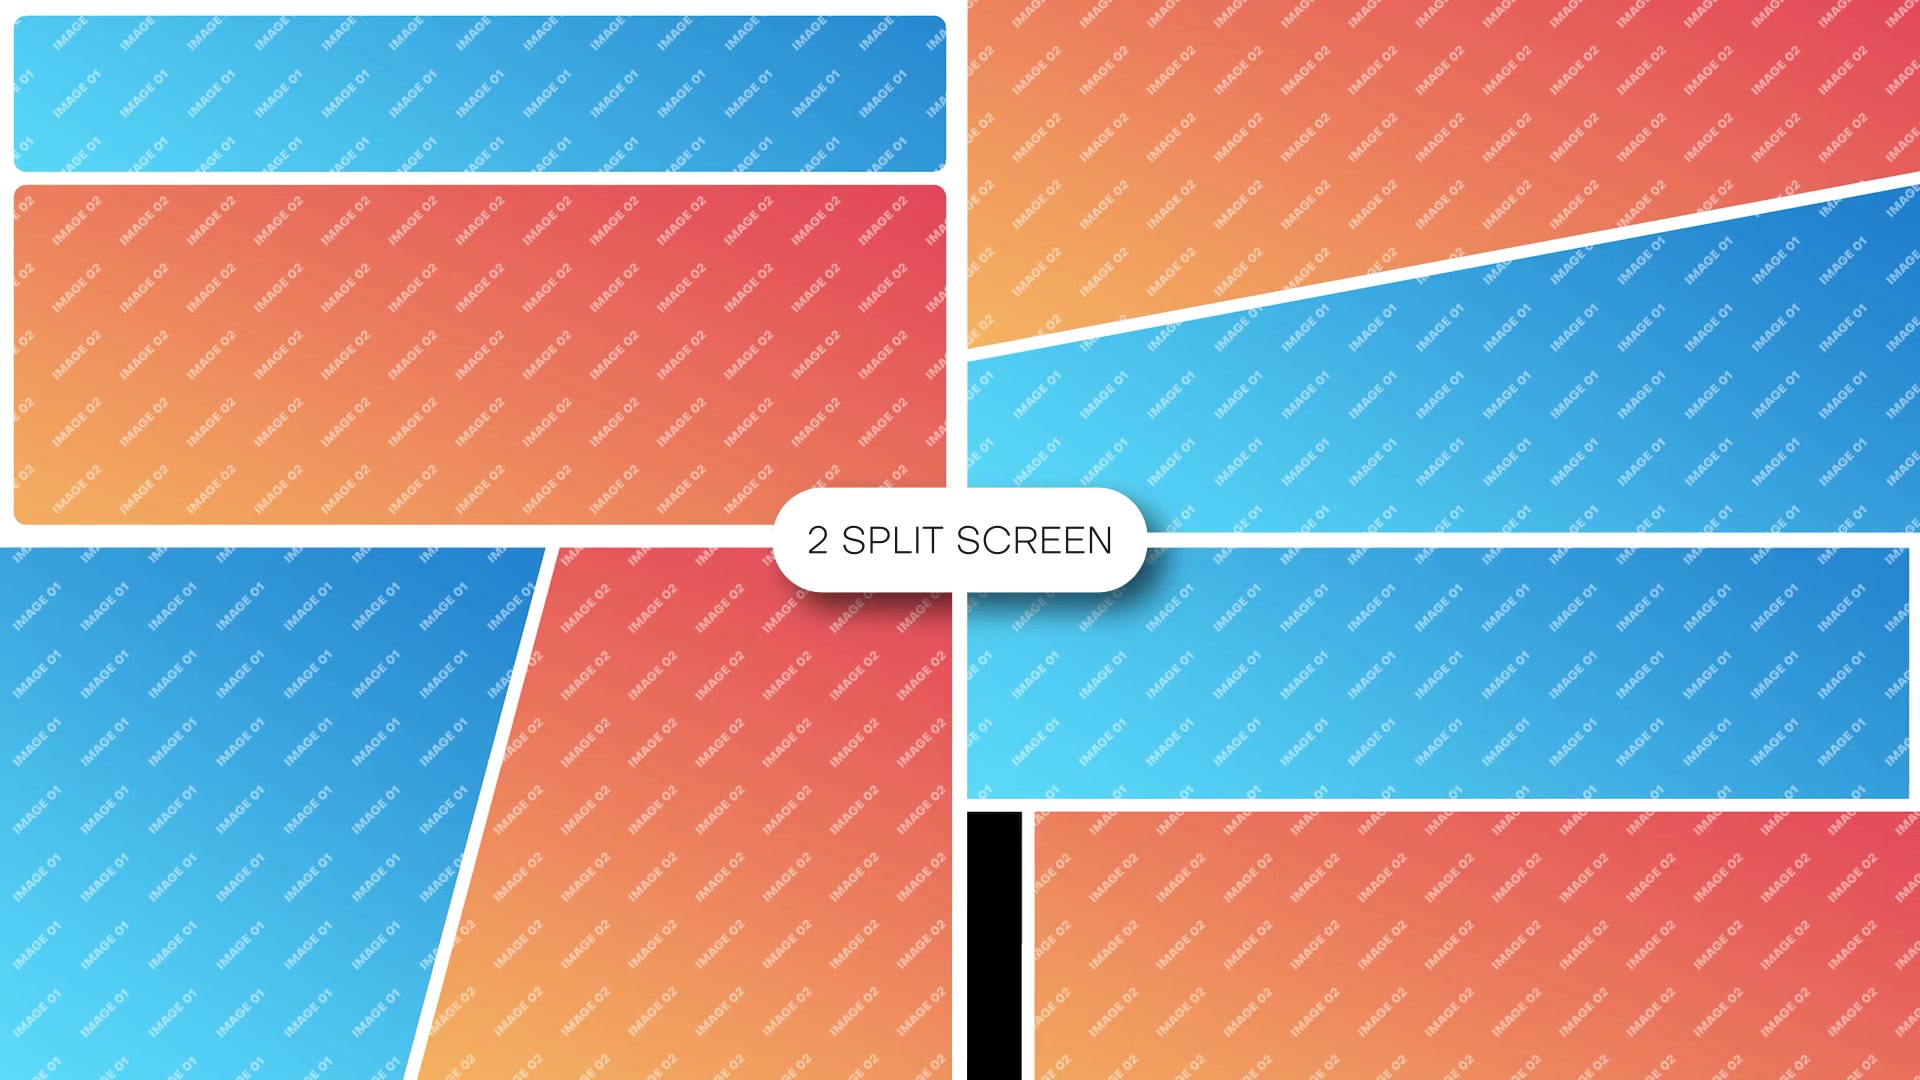 Multiscreen 2 Split Screen Videohive 40804213 Premiere Pro Image 9